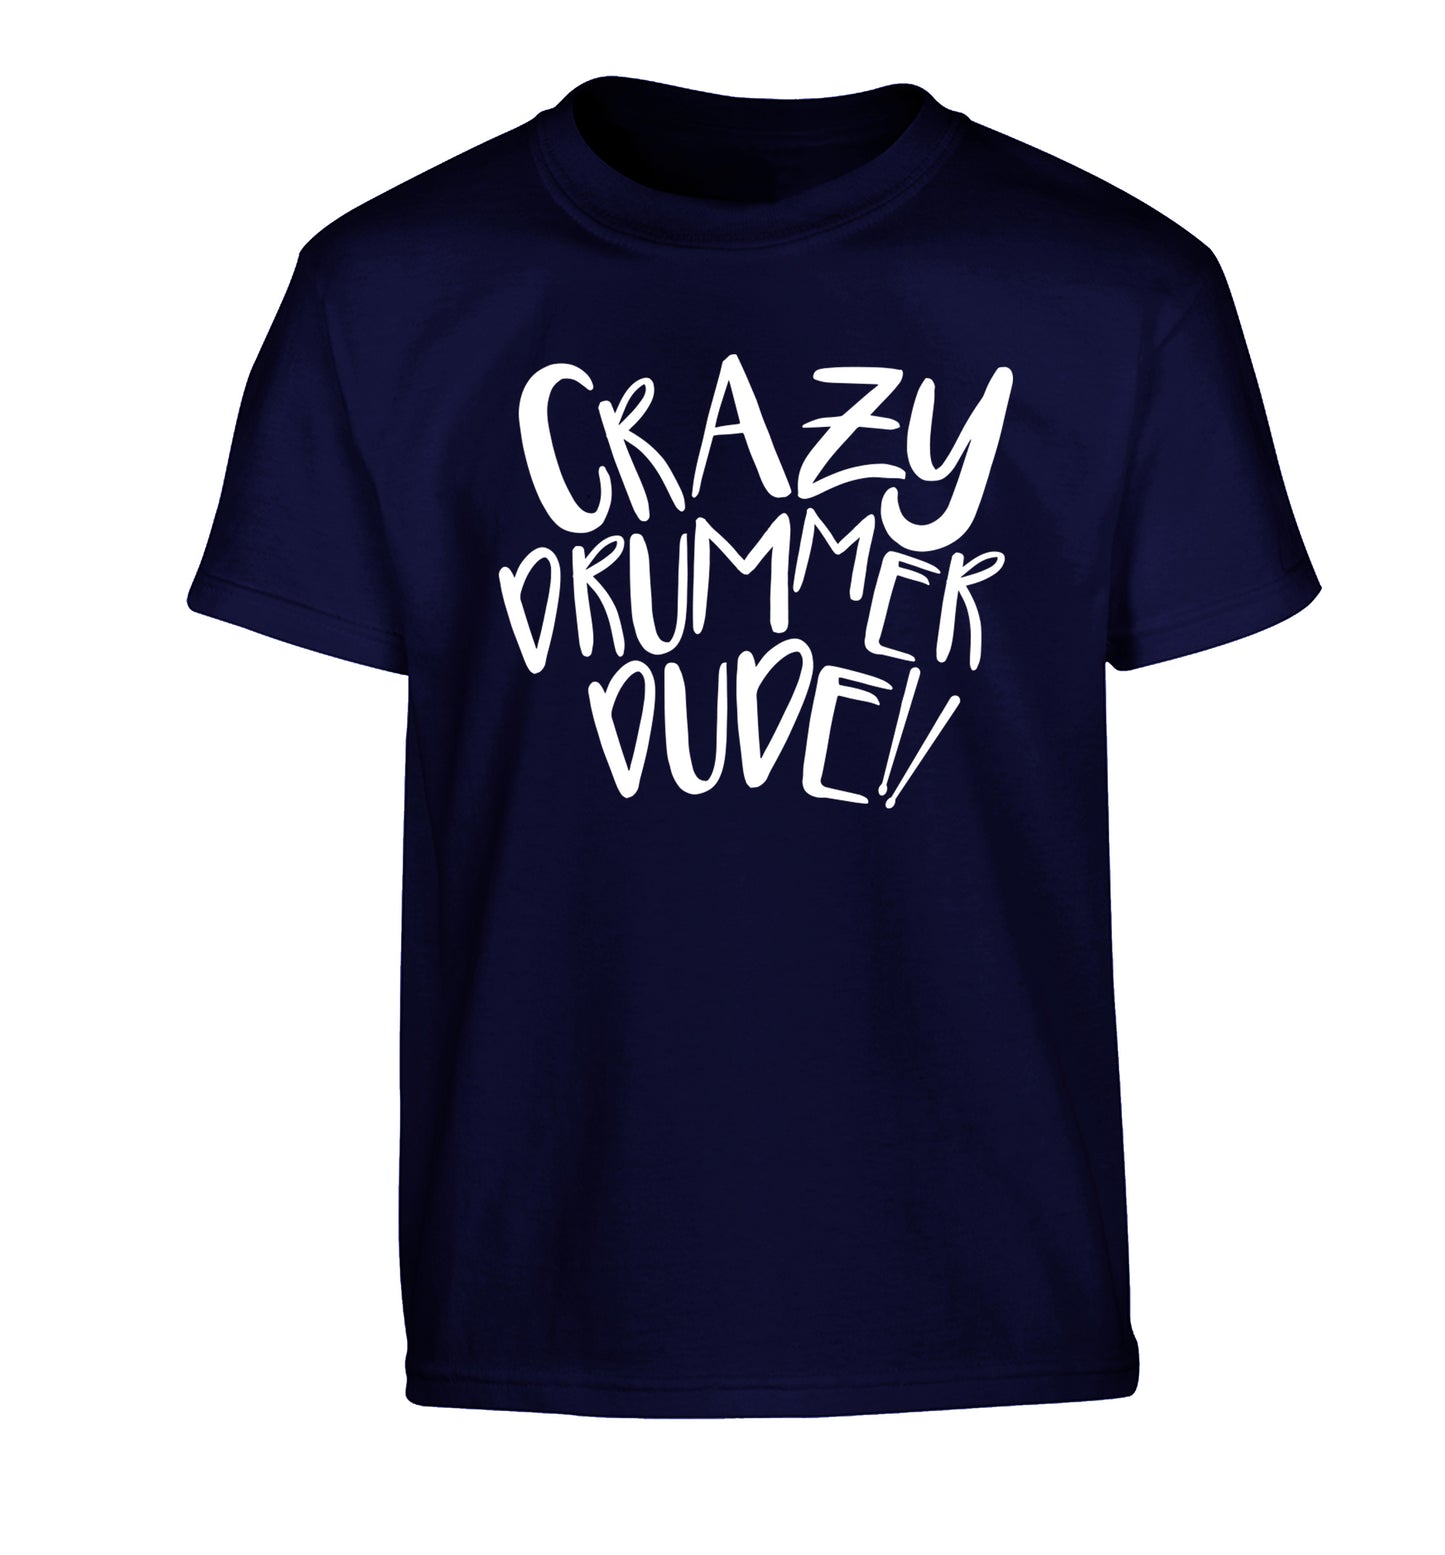 Crazy drummer dude Children's navy Tshirt 12-14 Years